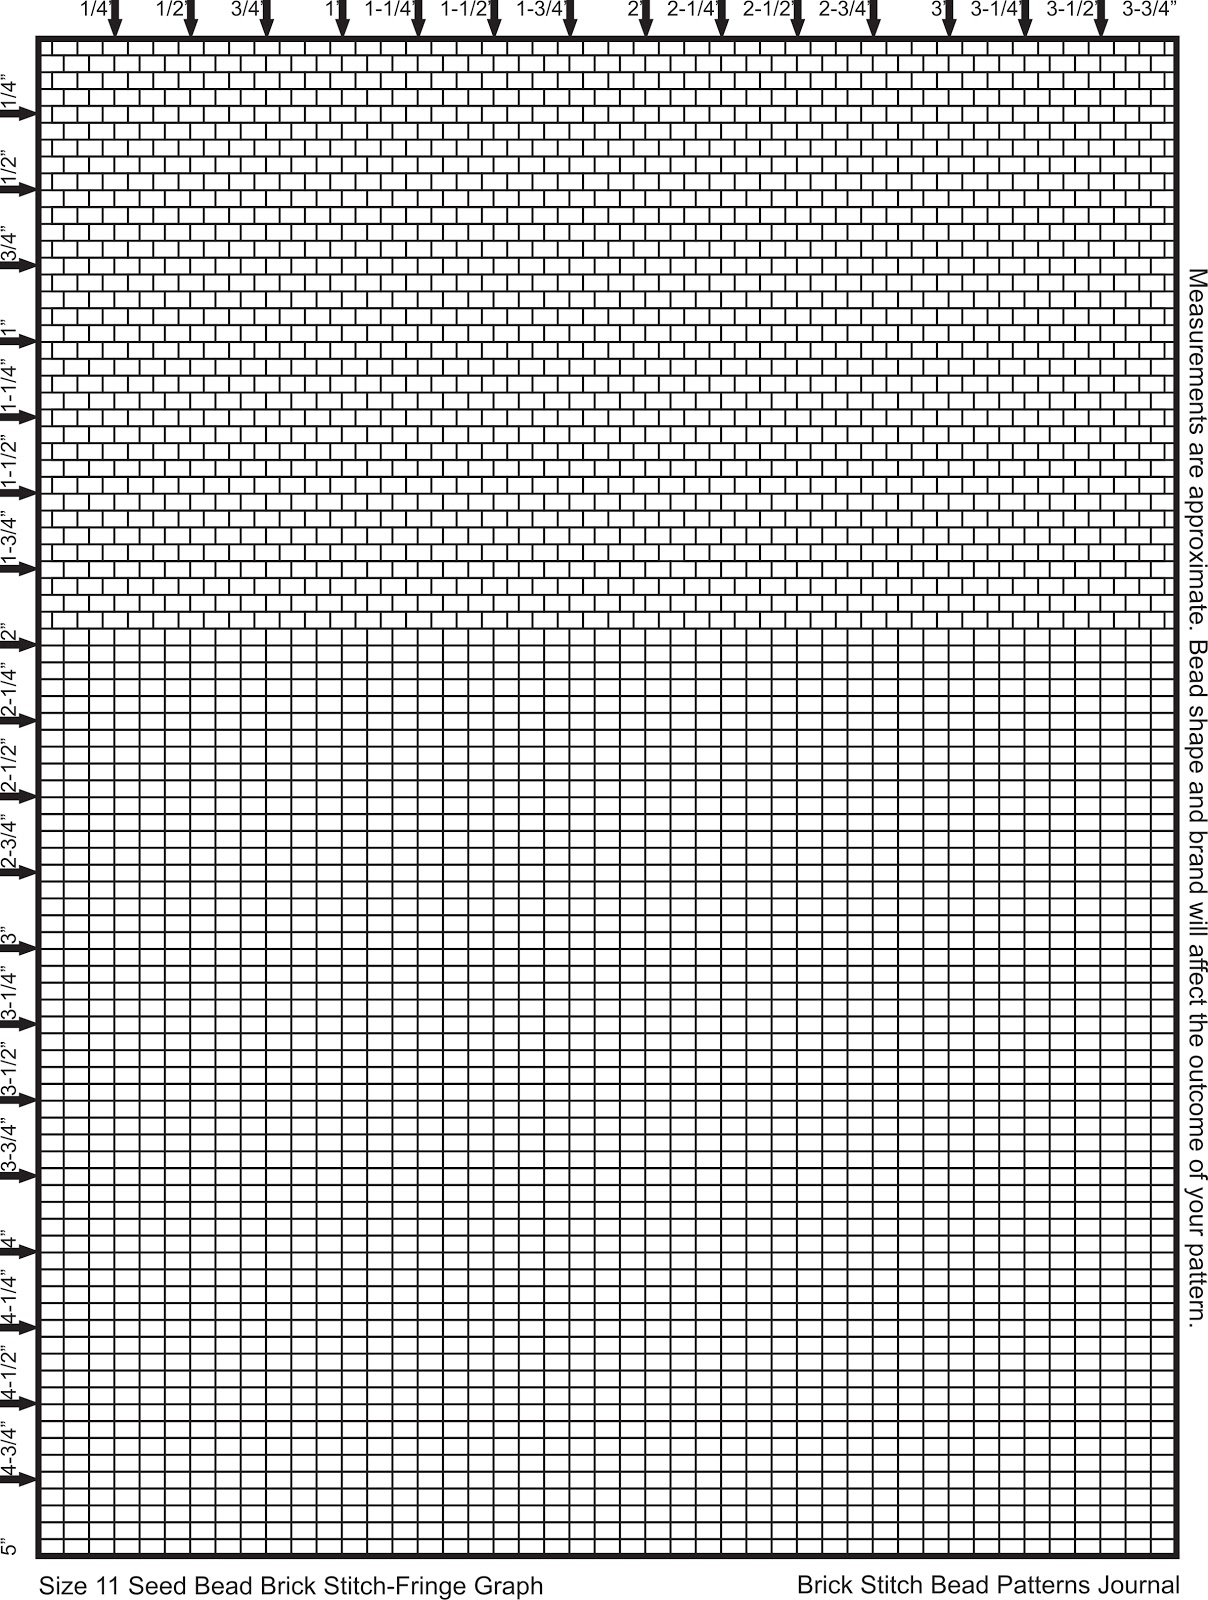 Brick Stitch Bead Patterns Journal Size 11 Seed Bead Graph Paper Brick 